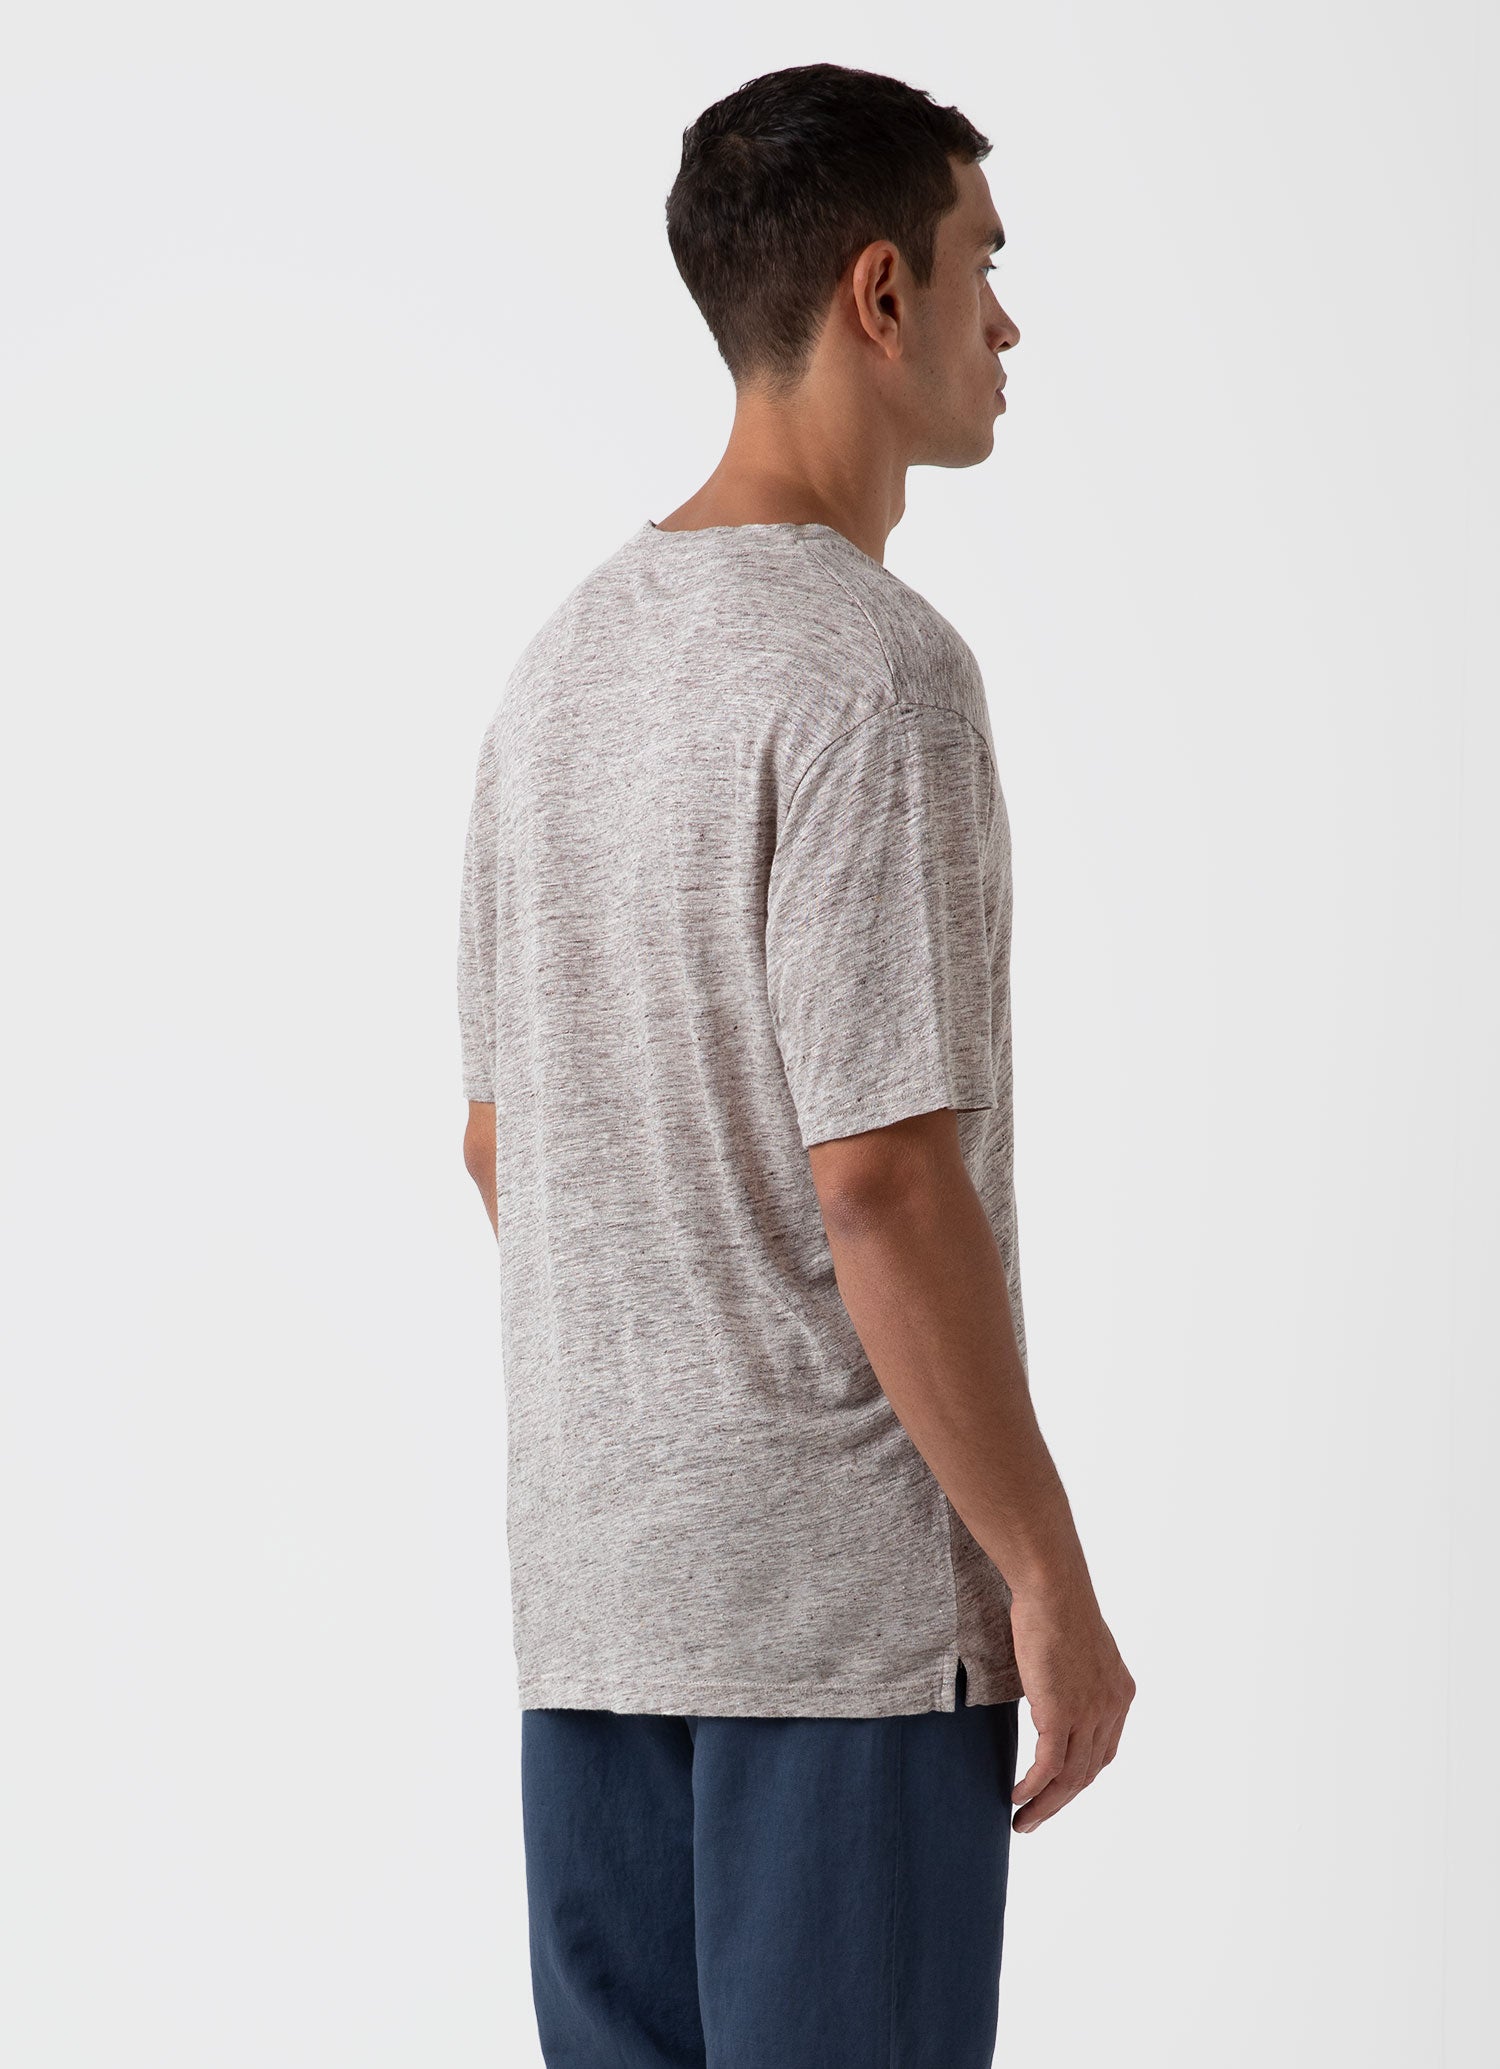 Men's Linen T-shirt in Oatmeal Melange